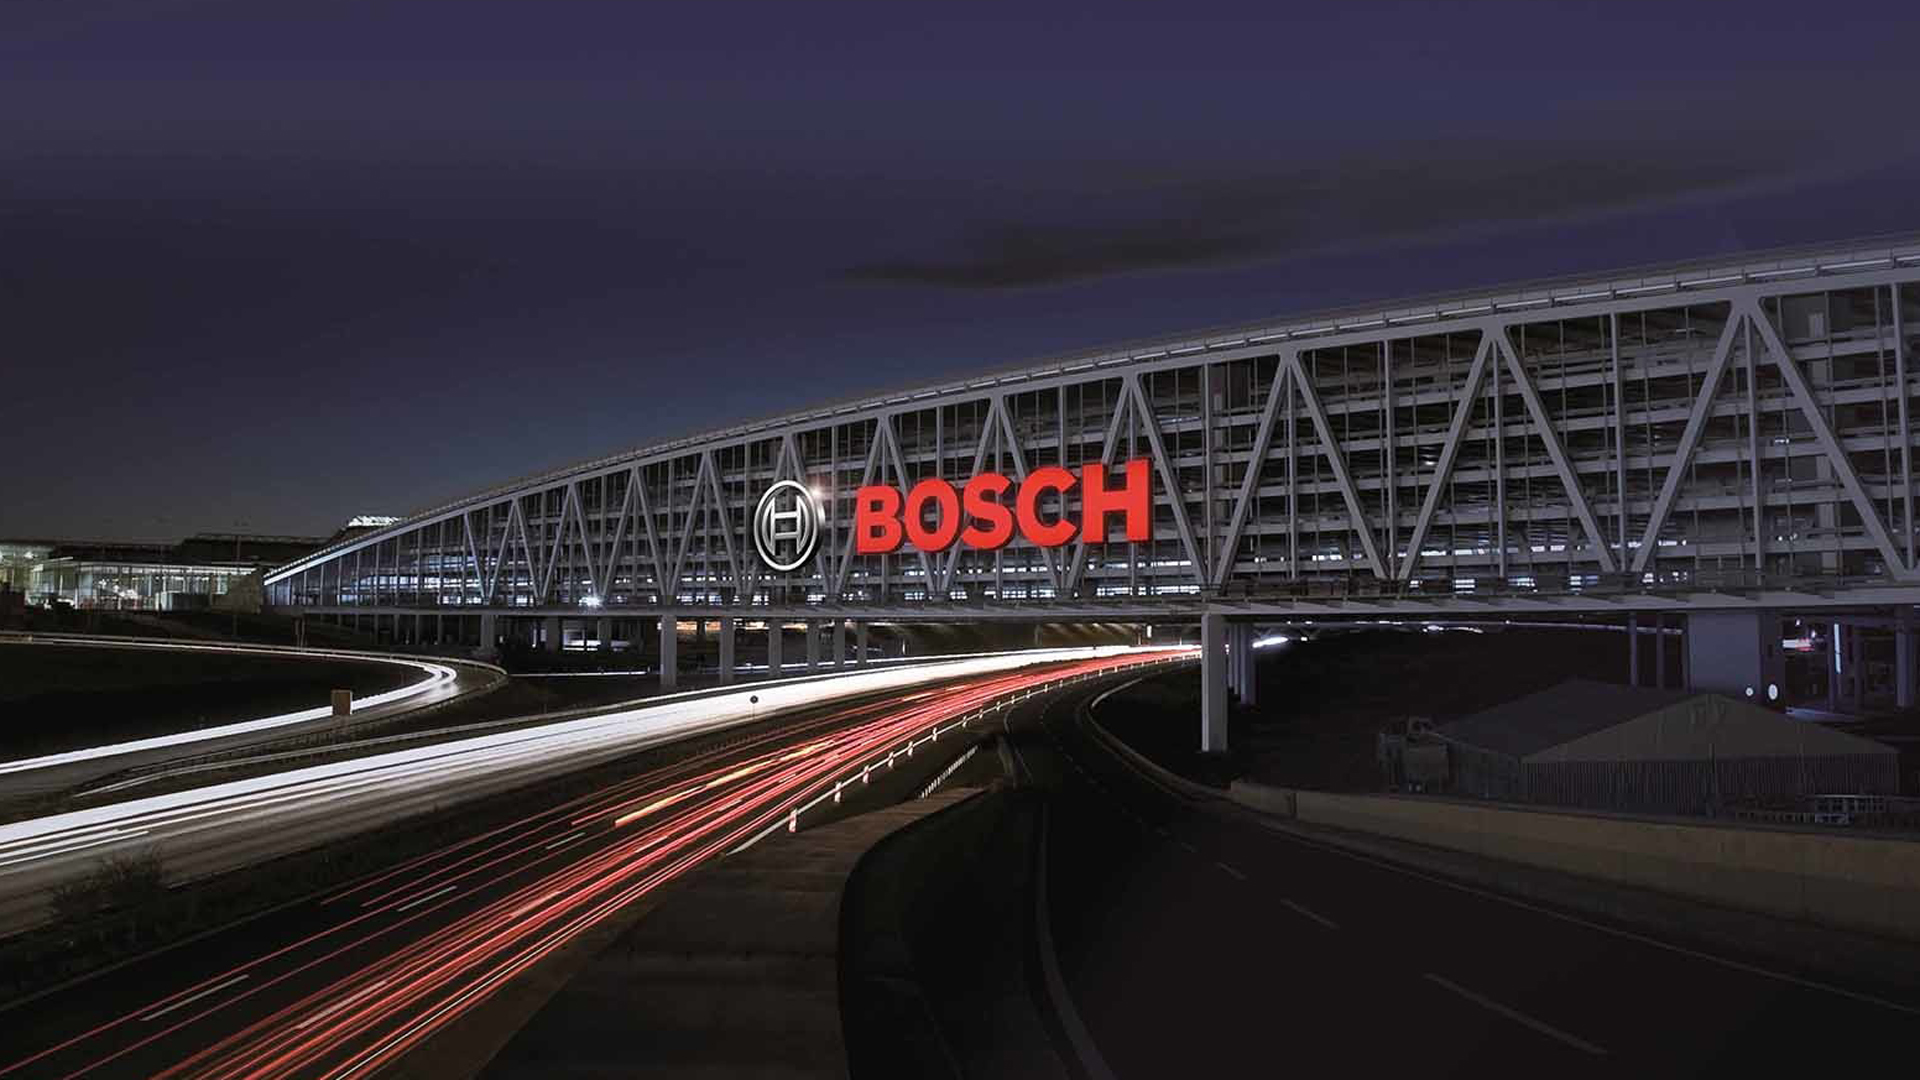 Bosch Wallpaper - Bosch Plant , HD Wallpaper & Backgrounds